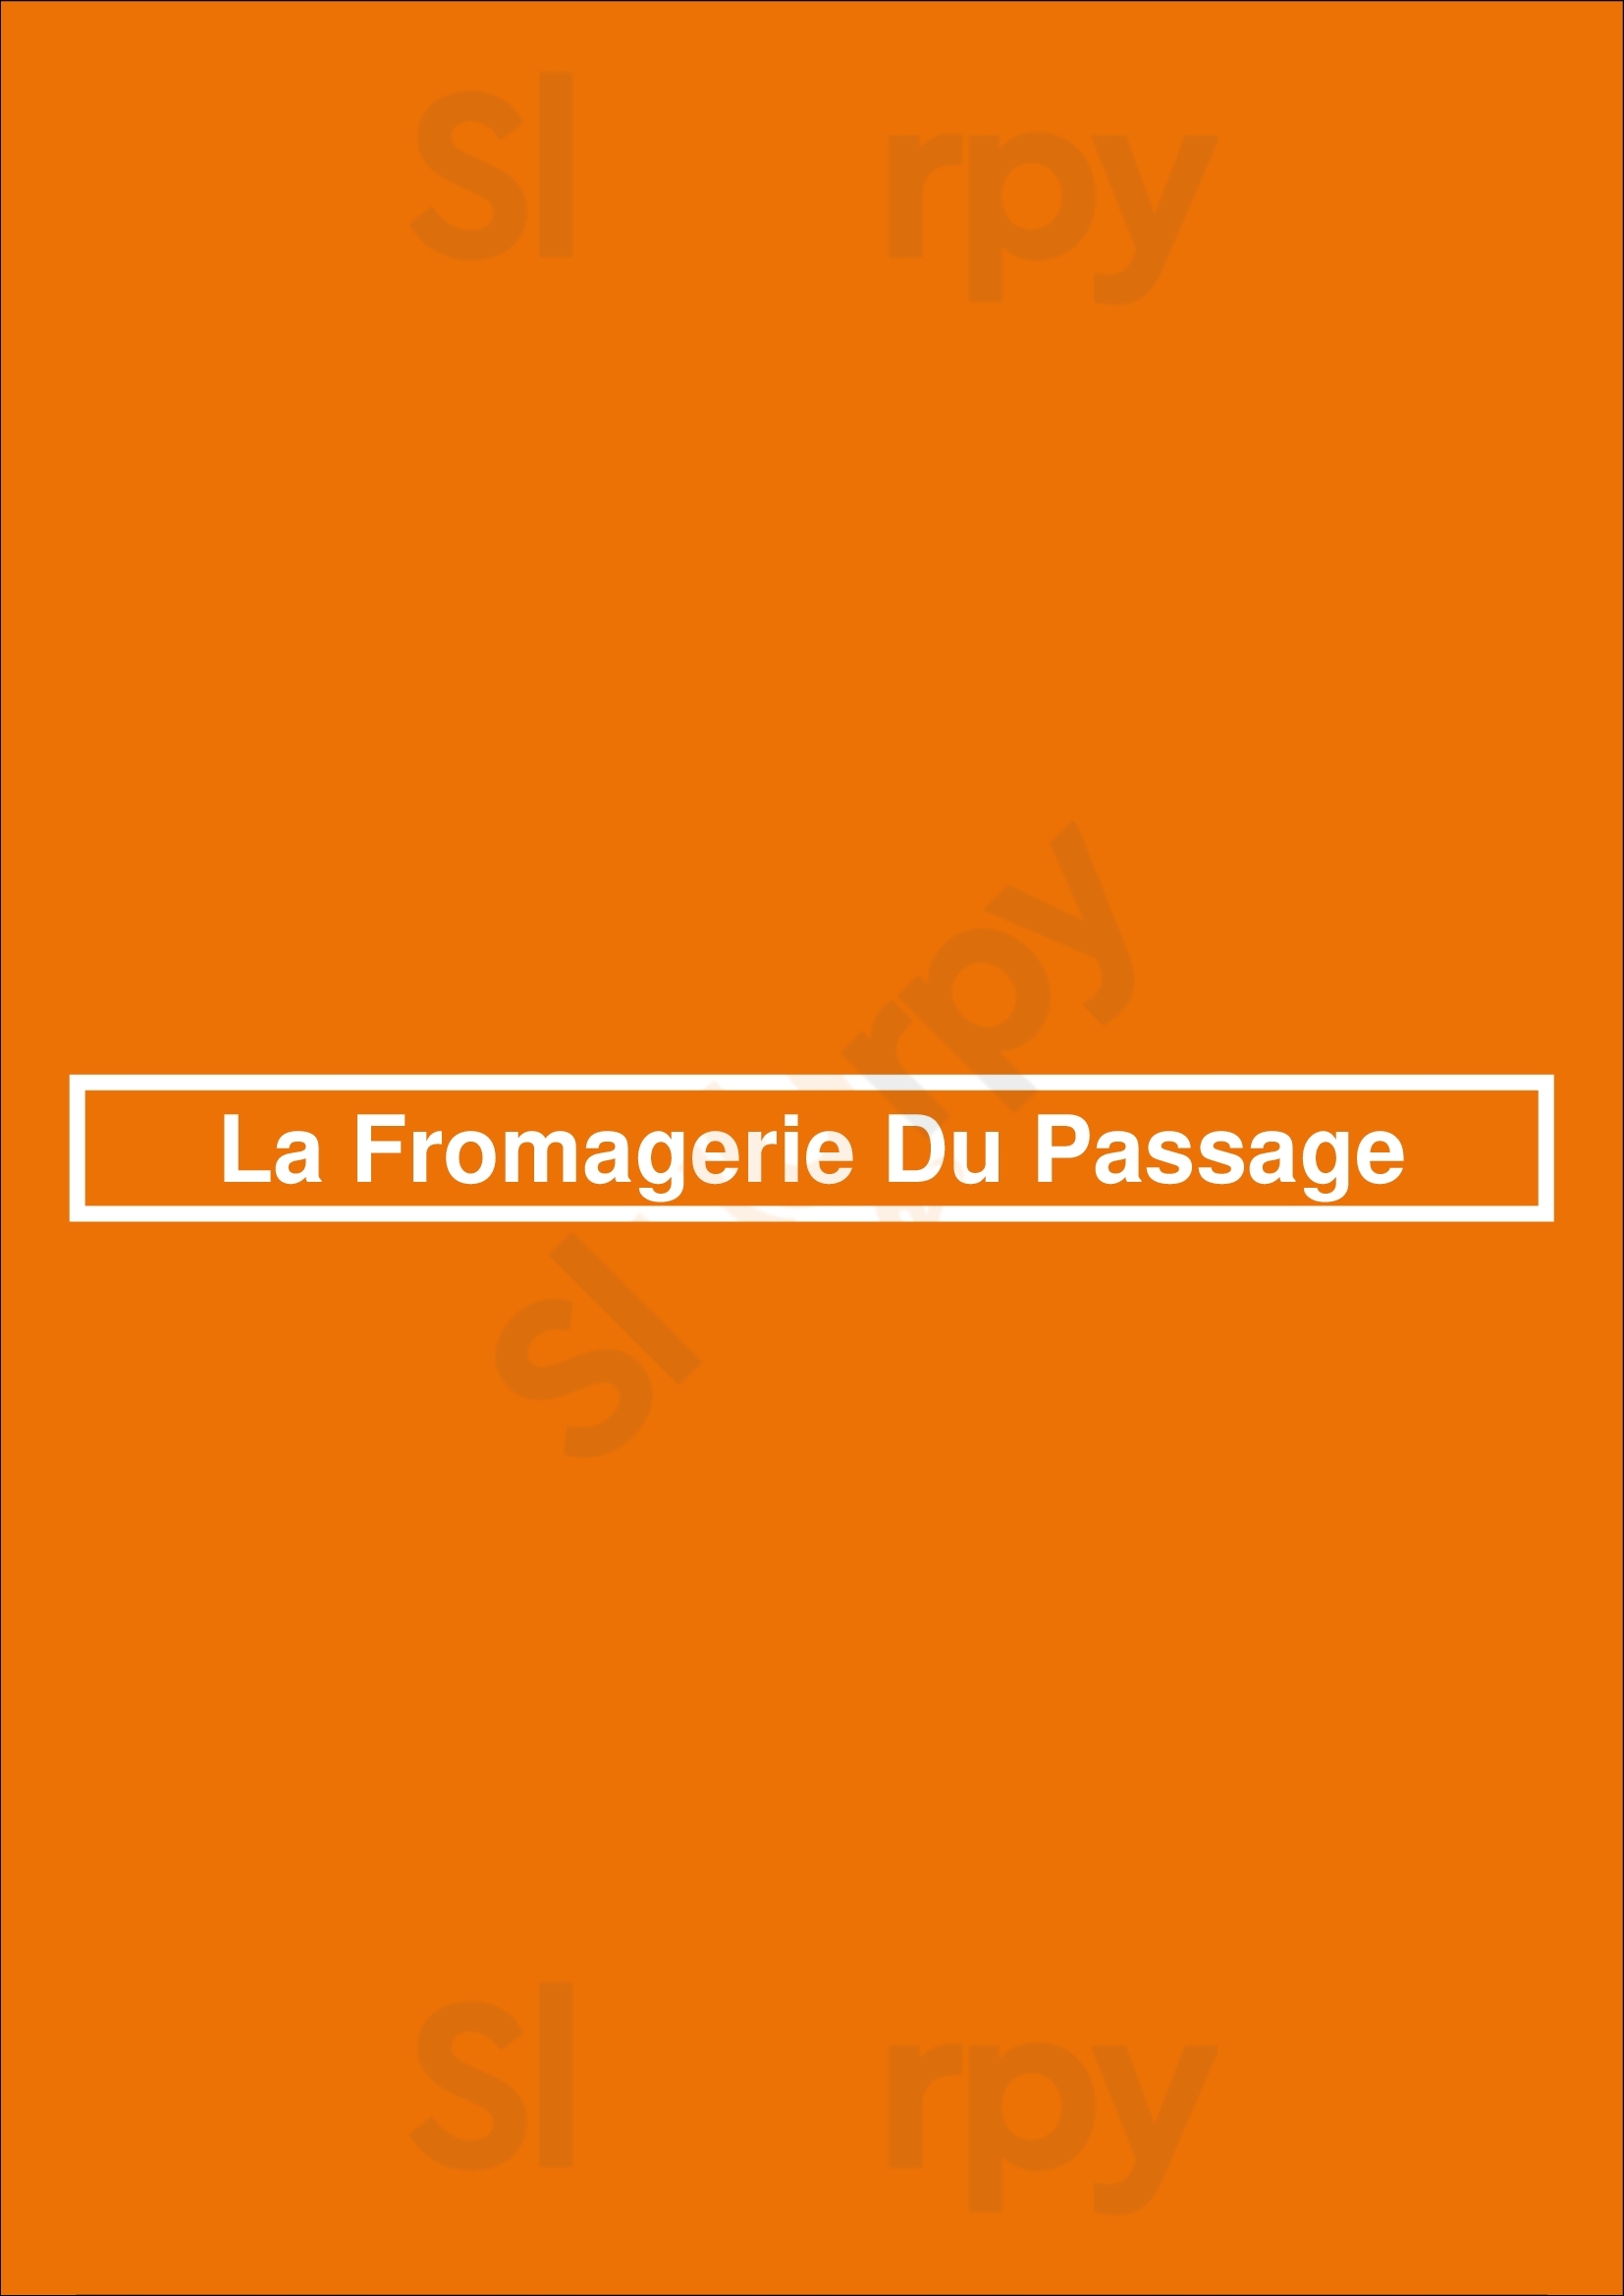 La Fromagerie Du Passage Aix-en-Provence Menu - 1